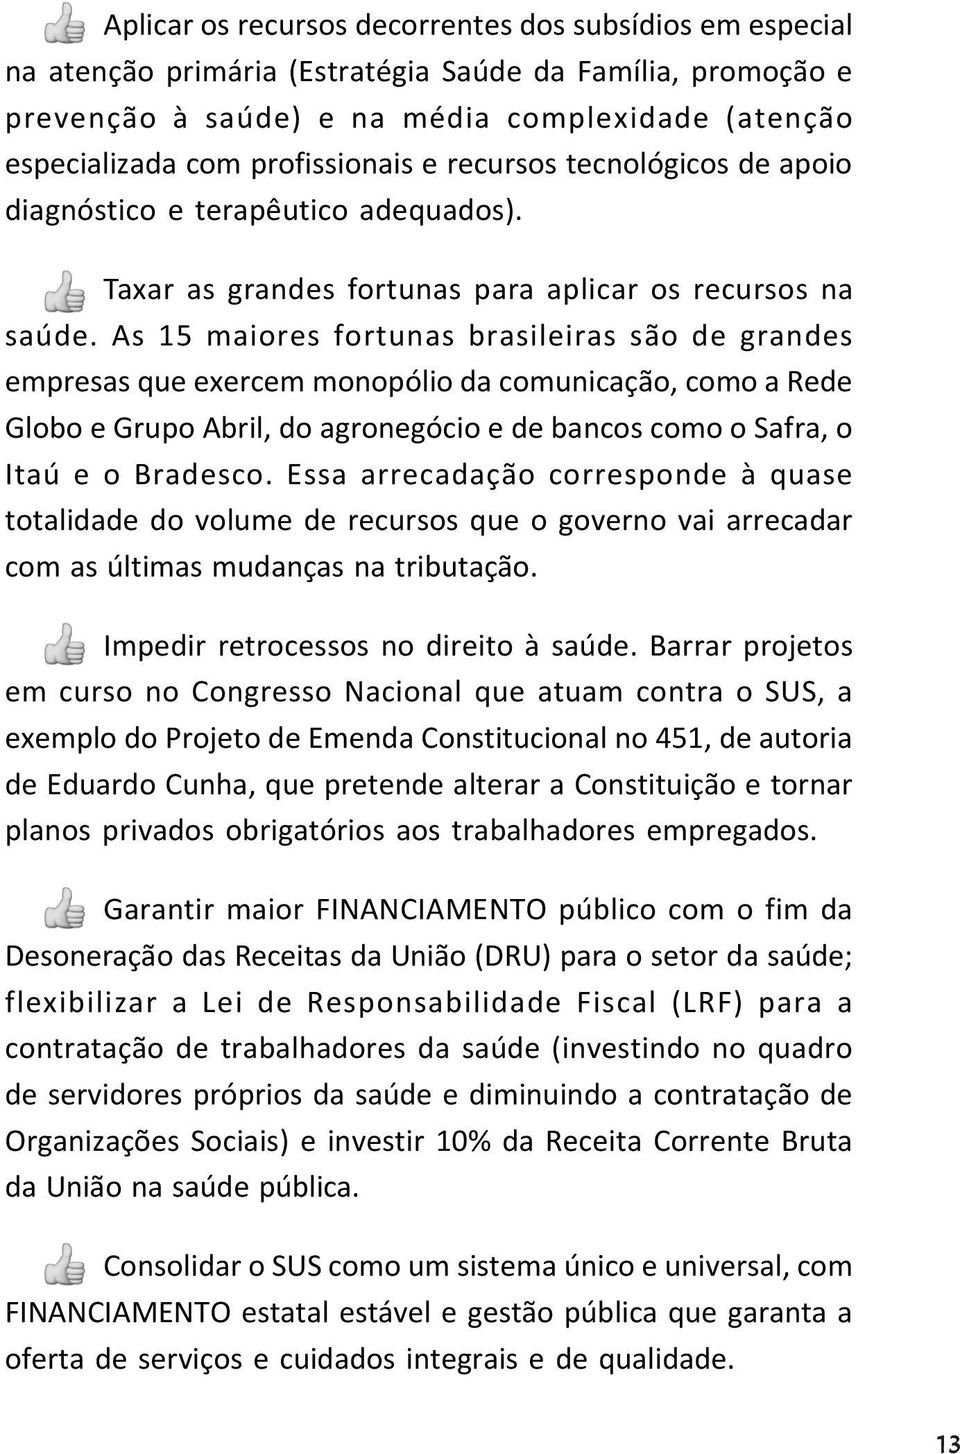 As 15 maiores fortunas brasileiras são de grandes empresas que exercem monopólio da comunicação, como a Rede Globo e Grupo Abril, do agronegócio e de bancos como o Safra, o Itaú e o Bradesco.